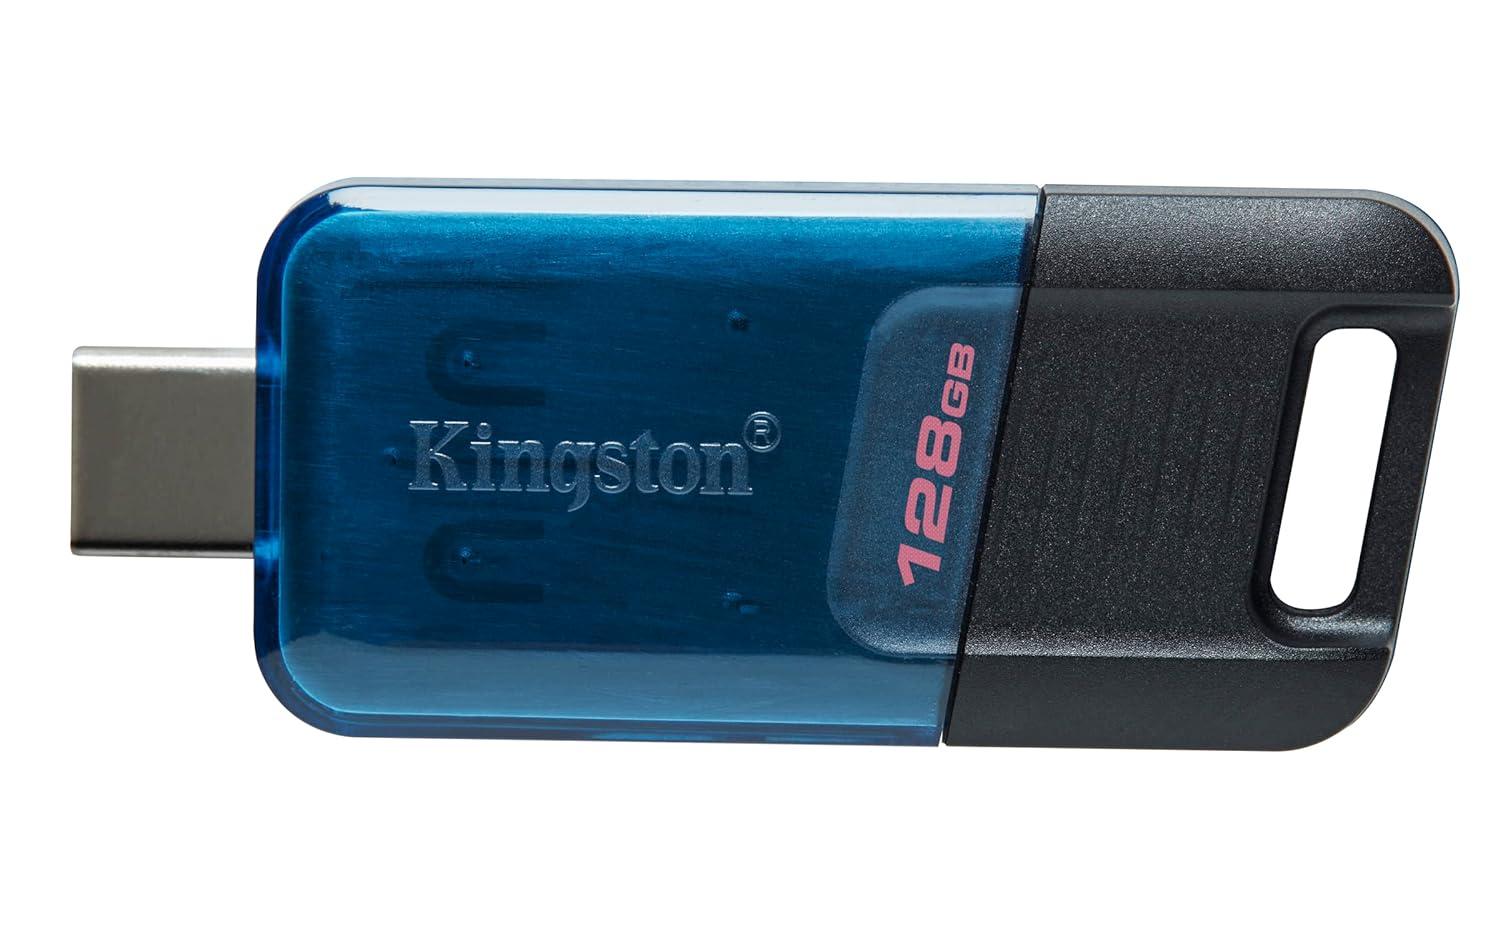 KINGSTON USB flash memorija DataTraveler 80 M 128GB USB-C 3.2 flash DT80M/128GB crno-plavi